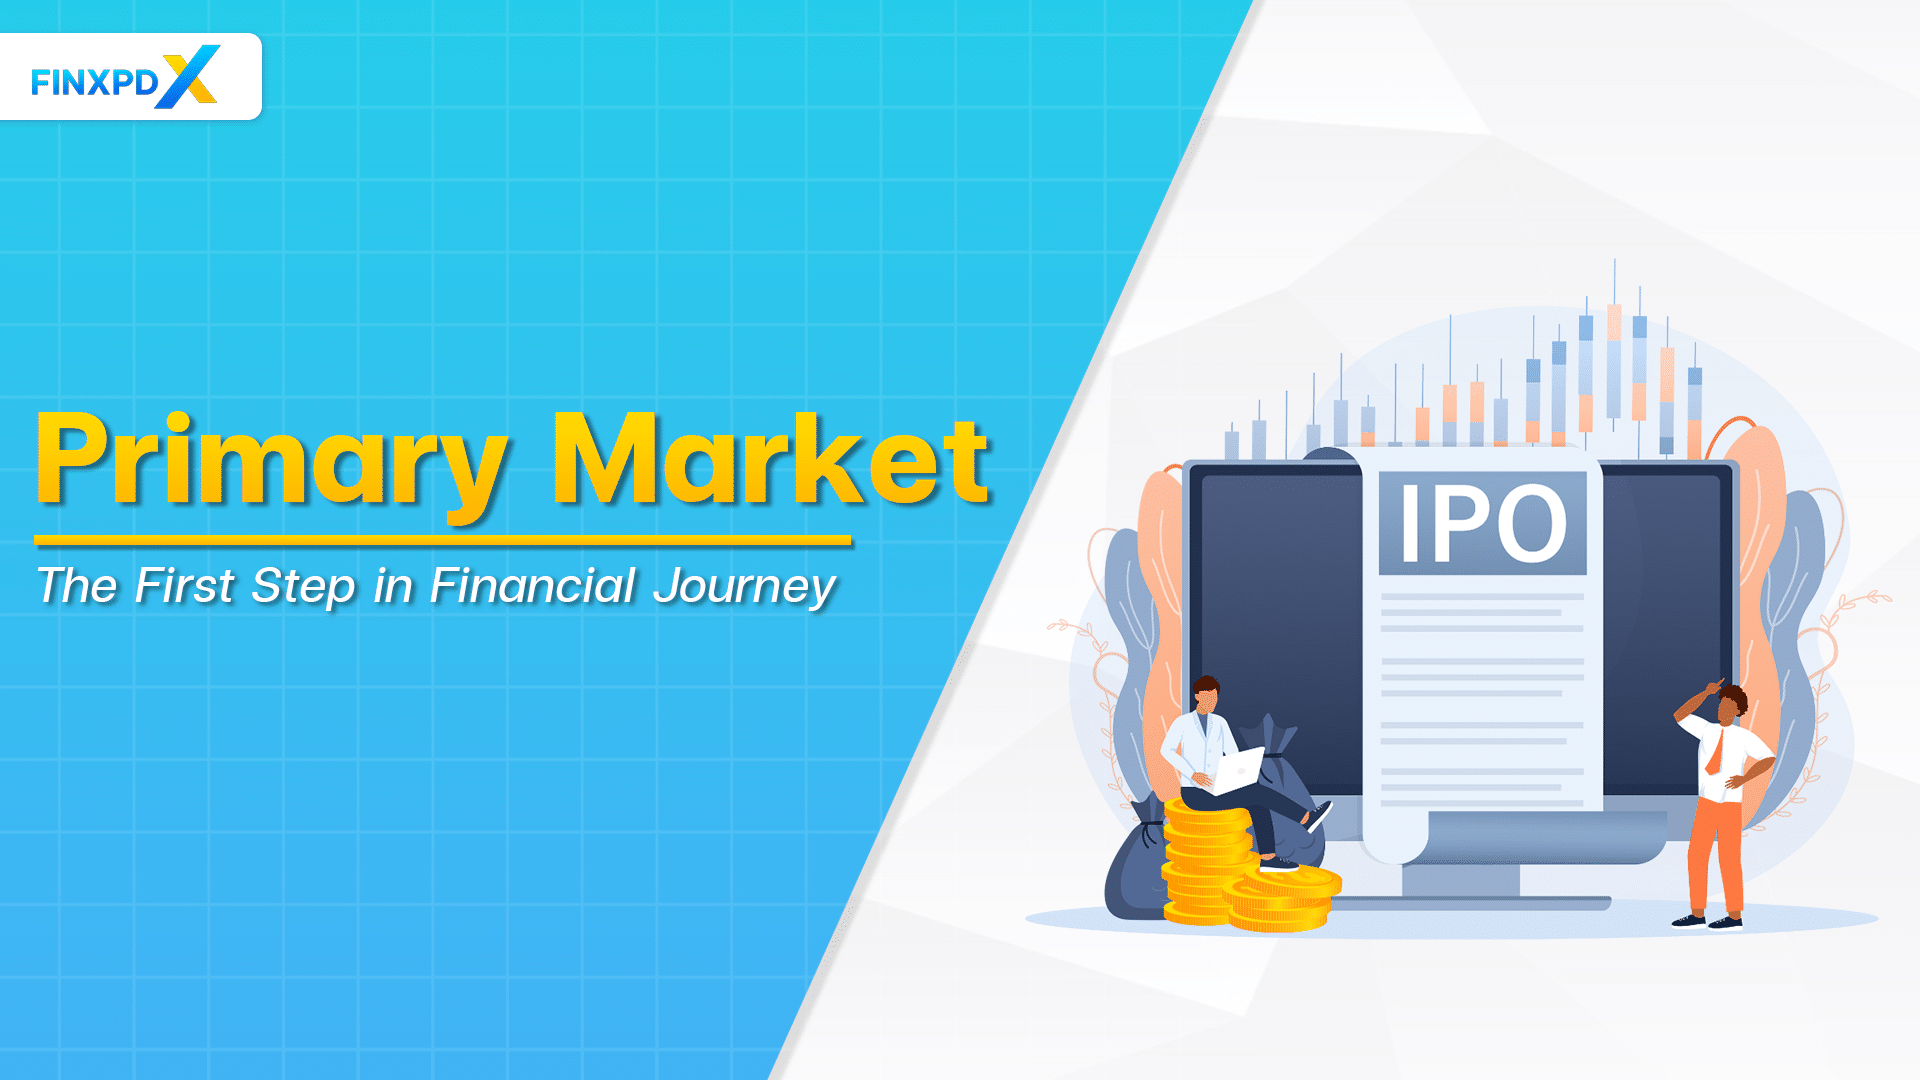 Primary market